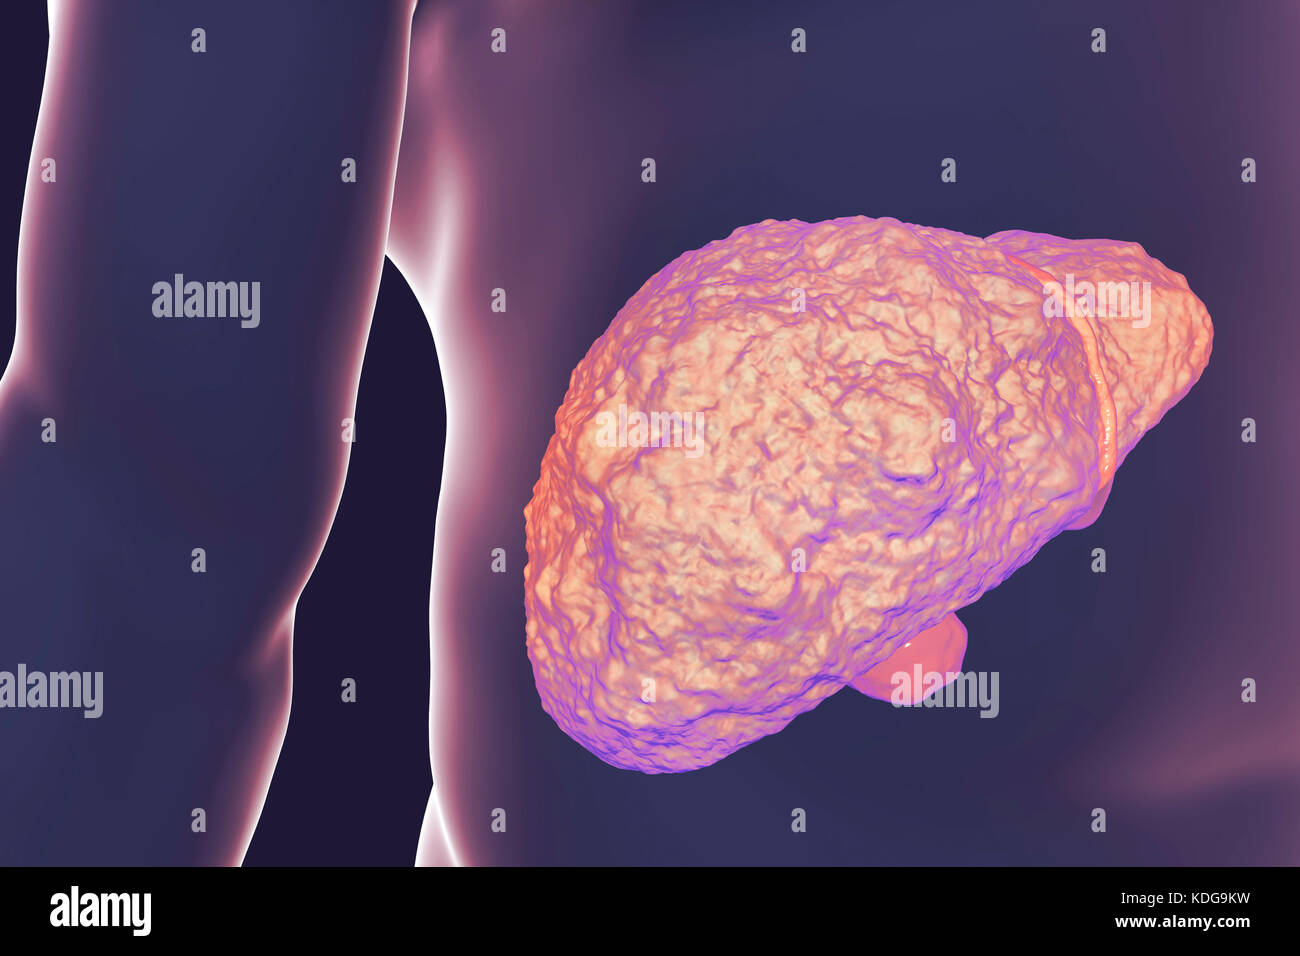 Fegato con cirrosi epatica, illustrazione del computer. La cirrosi è una conseguenza di malattie croniche di fegato caratterizzata da fibrosi e cicatrizzazione del tessuto. Foto Stock